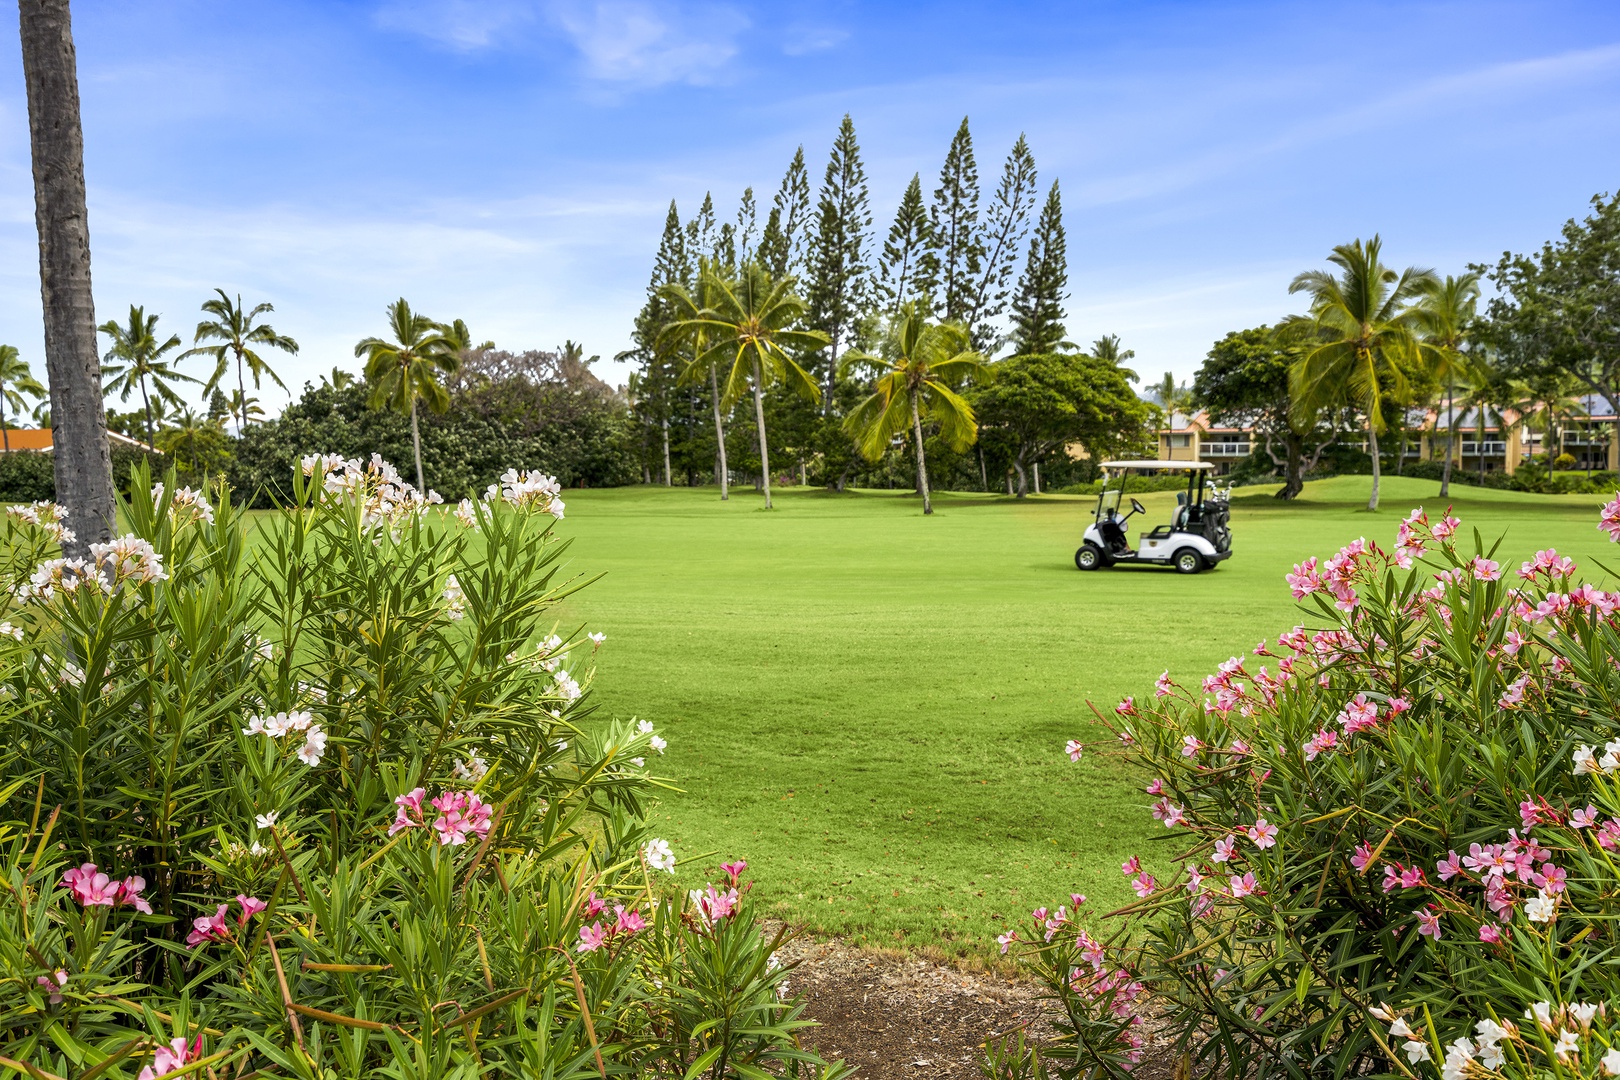 Kailua Kona Vacation Rentals, Kanaloa at Kona 1302 - Golf course frontage